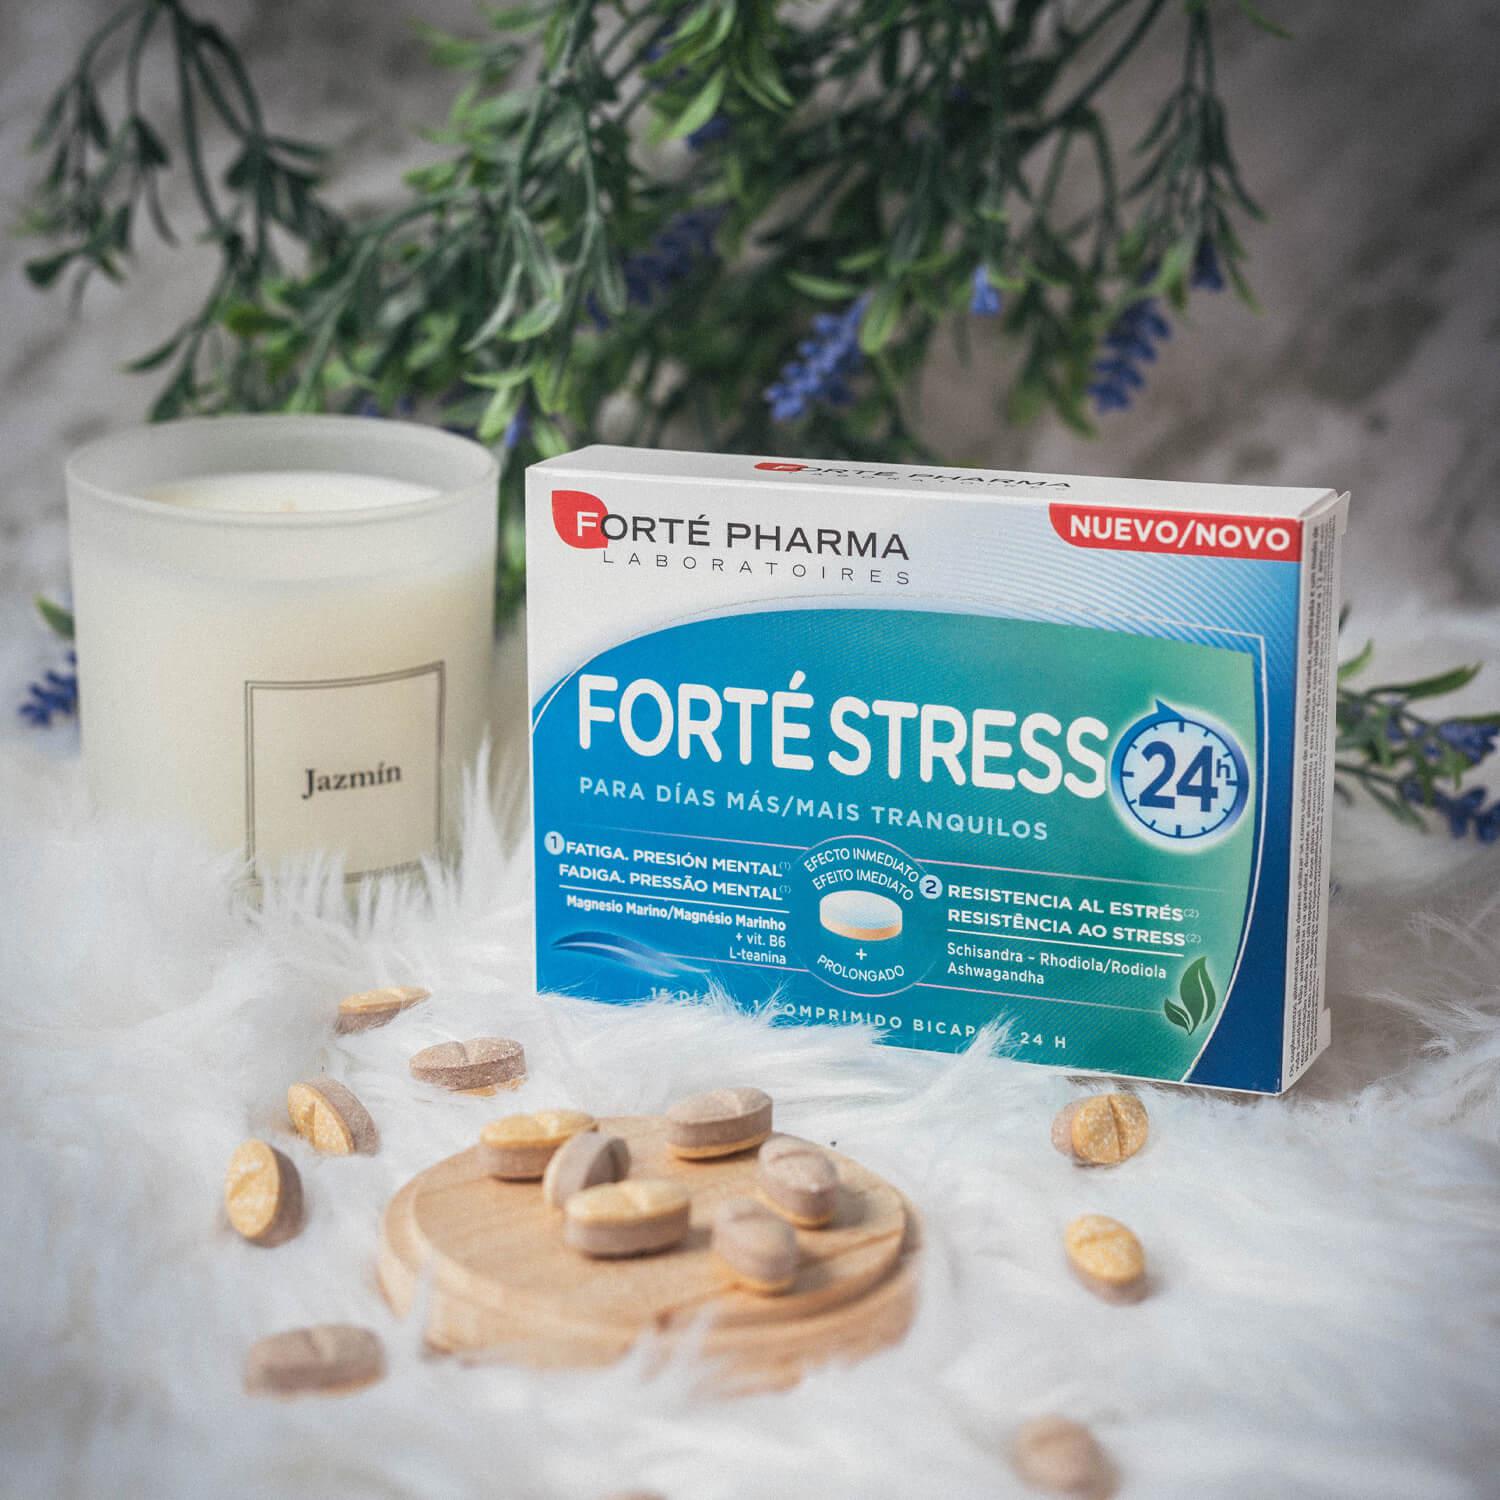 forté stress 24 h-Estrés-Innovación-Forté Pharma